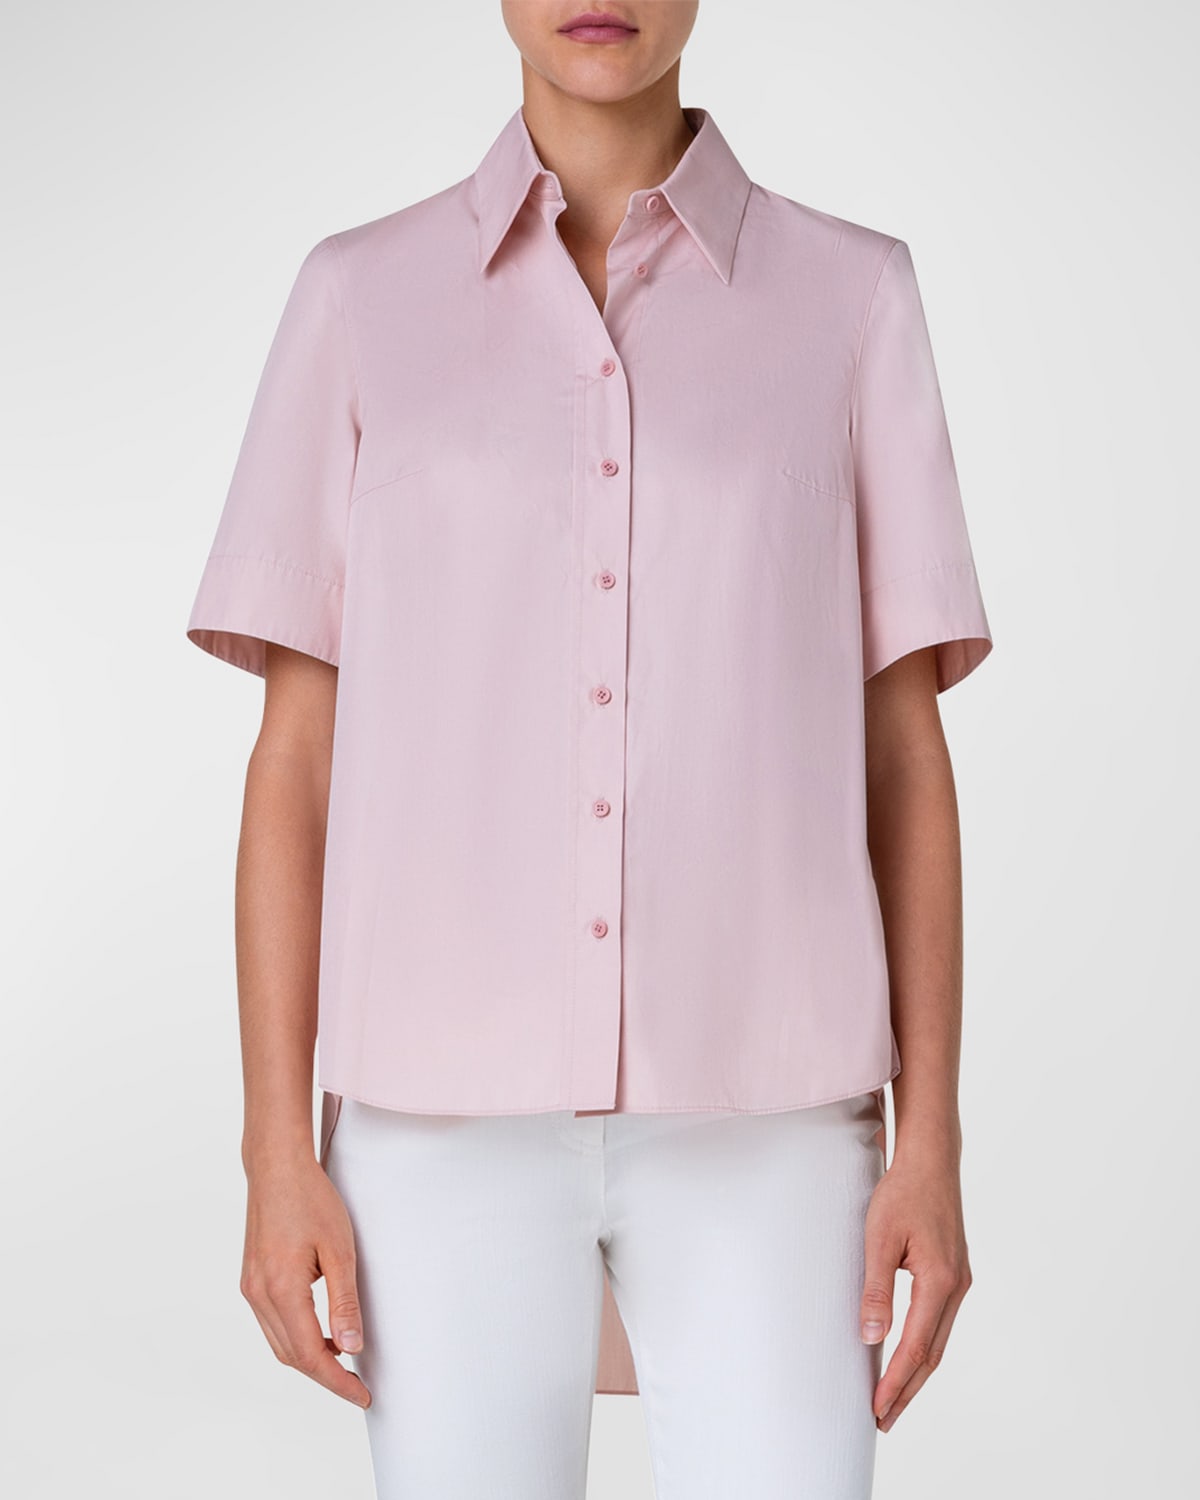 Akris Punto High-low Cotton Poplin Collared Shirt In Pale Pink